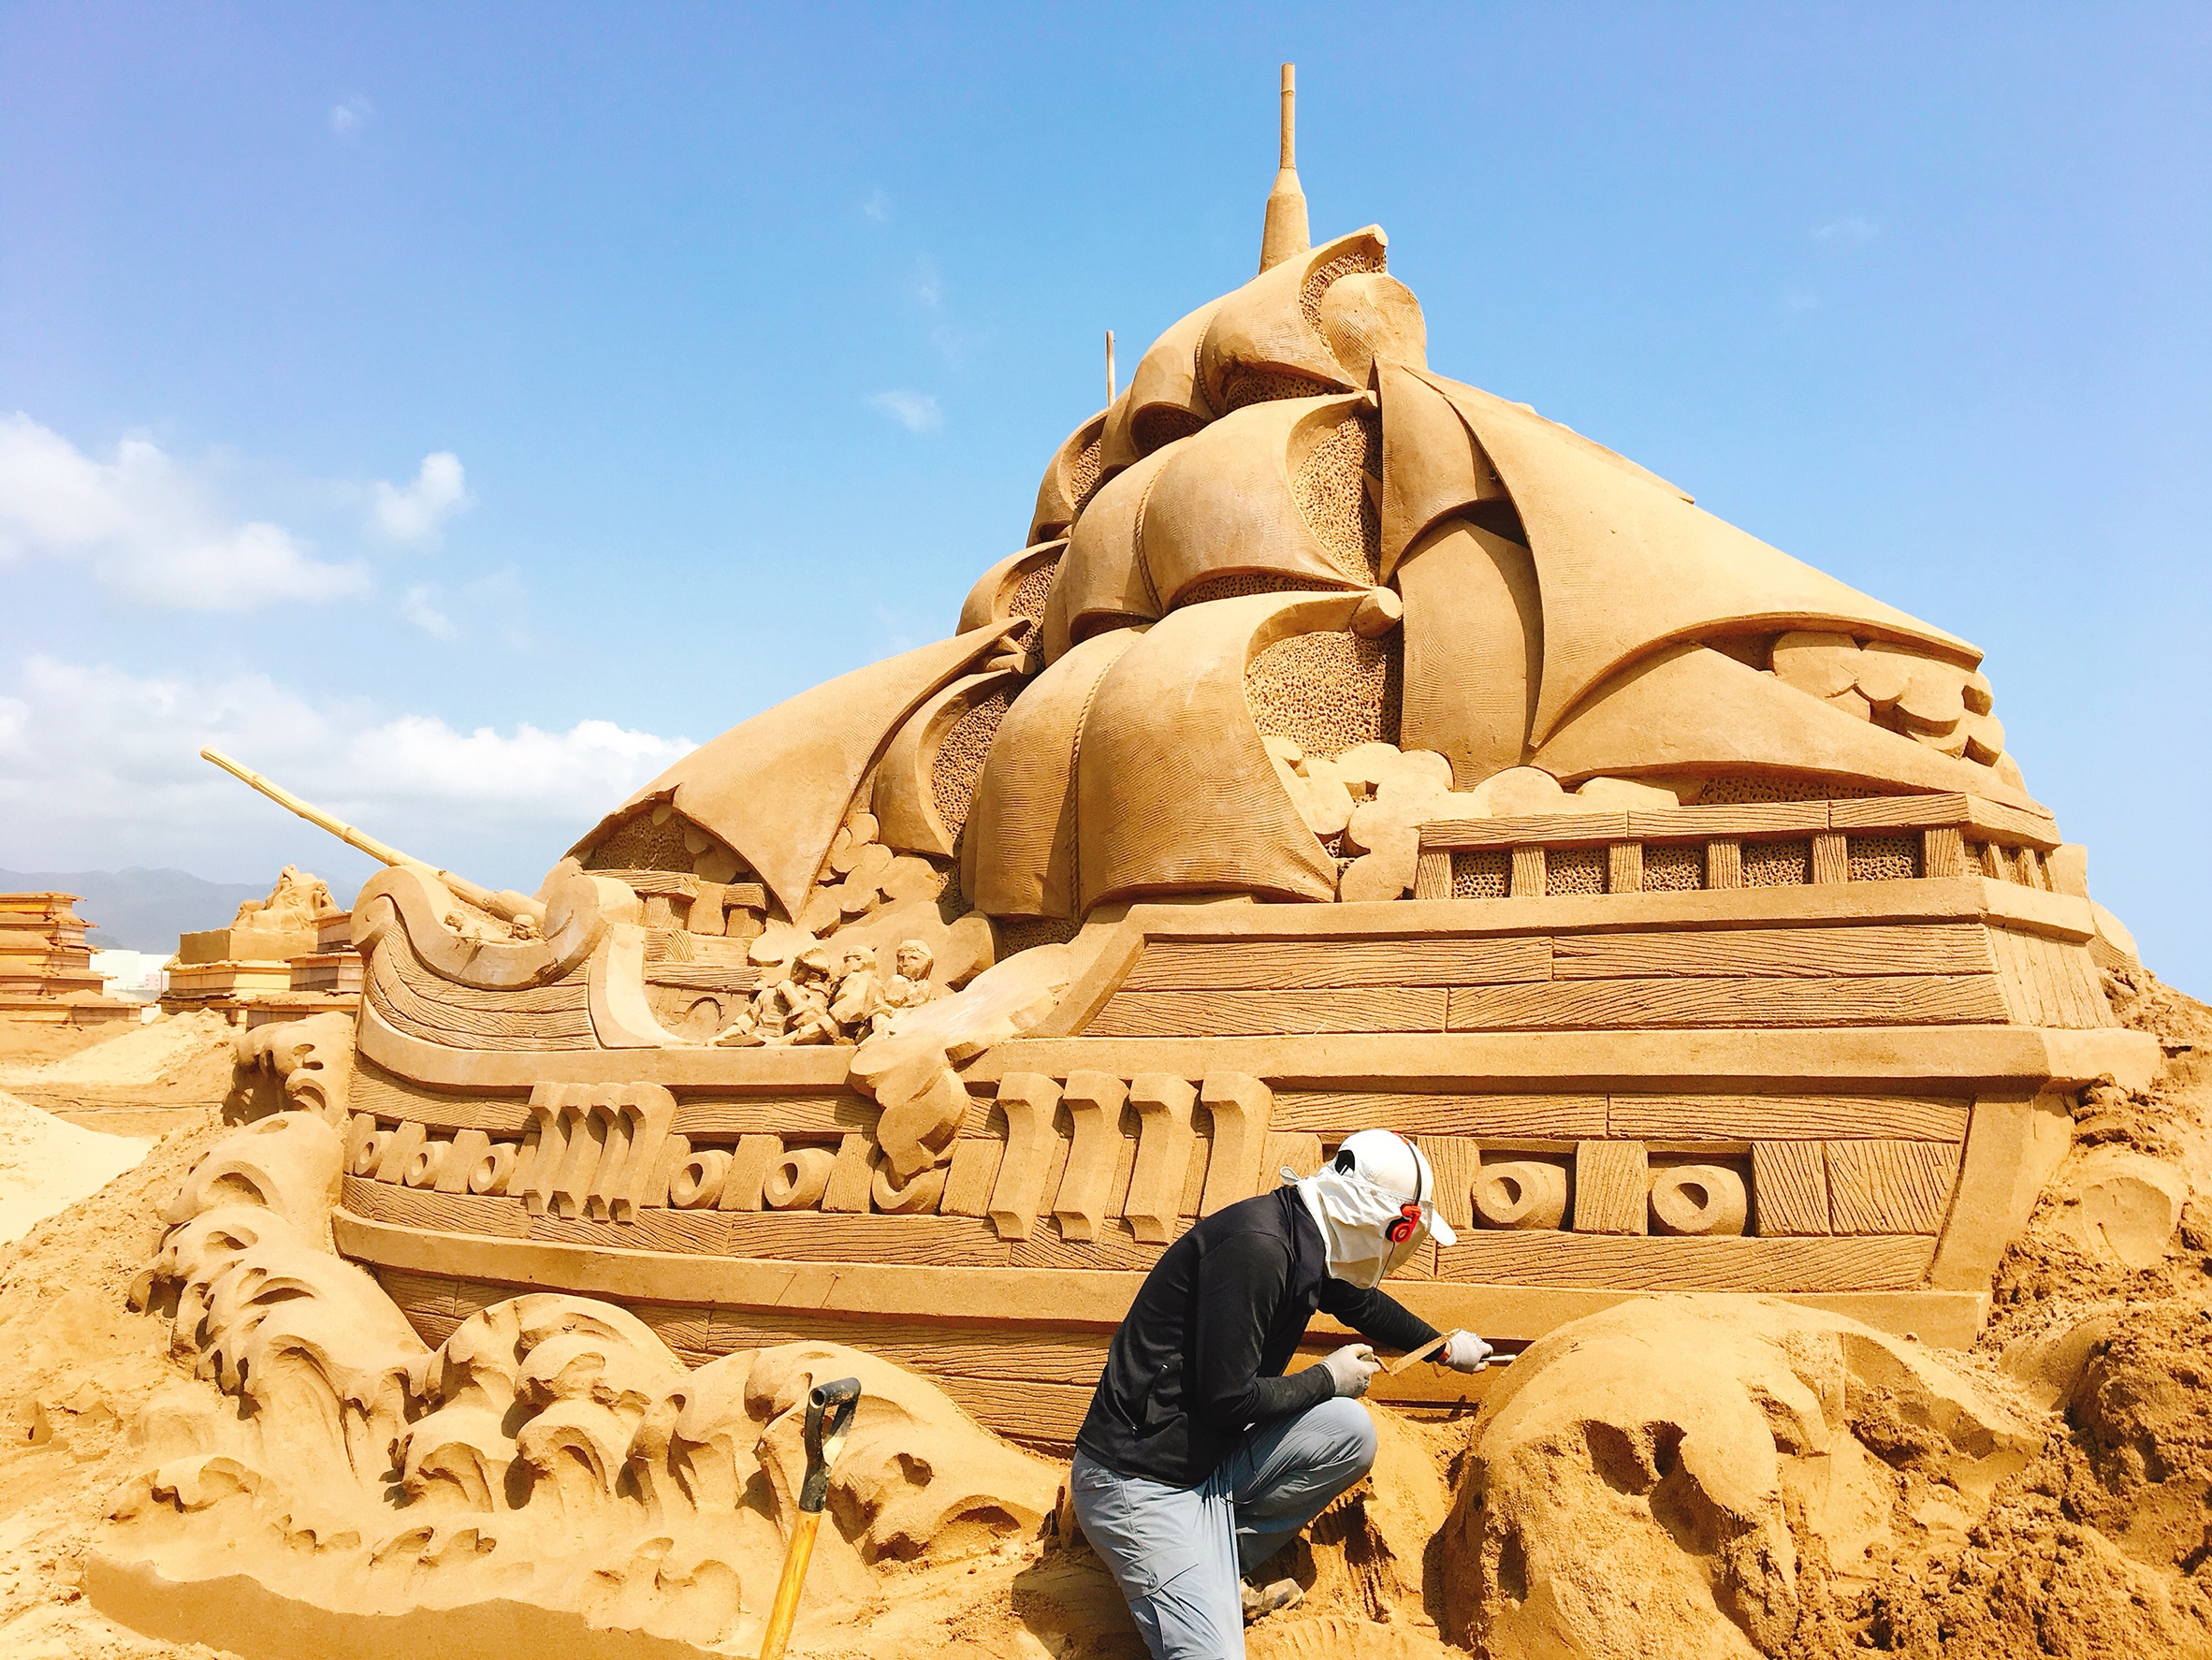 Международный сезон песчаных скульптур Fulong 2018